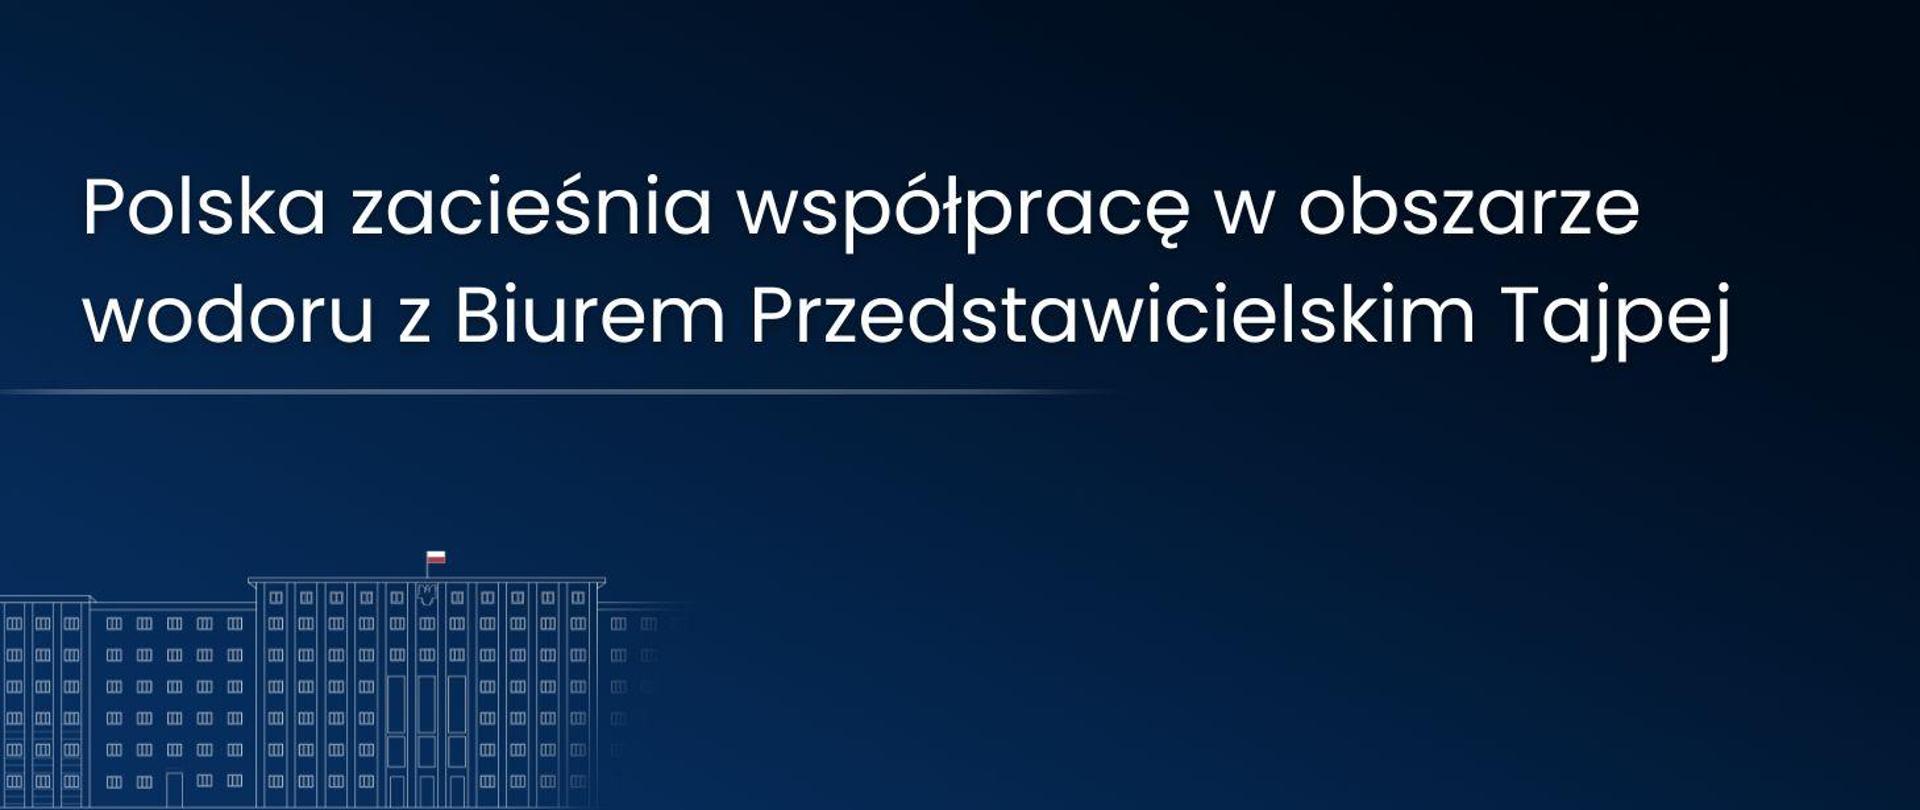 Grafika ilustracyjna. Na górze niebieskiej planszy jest napis: Polska zacieśnia współpracę w obszarze wodoru z Biurem Przedstawicielskim Tajpej. Pod napisem znajduje się zarys budynku z polską flagą na dachu.